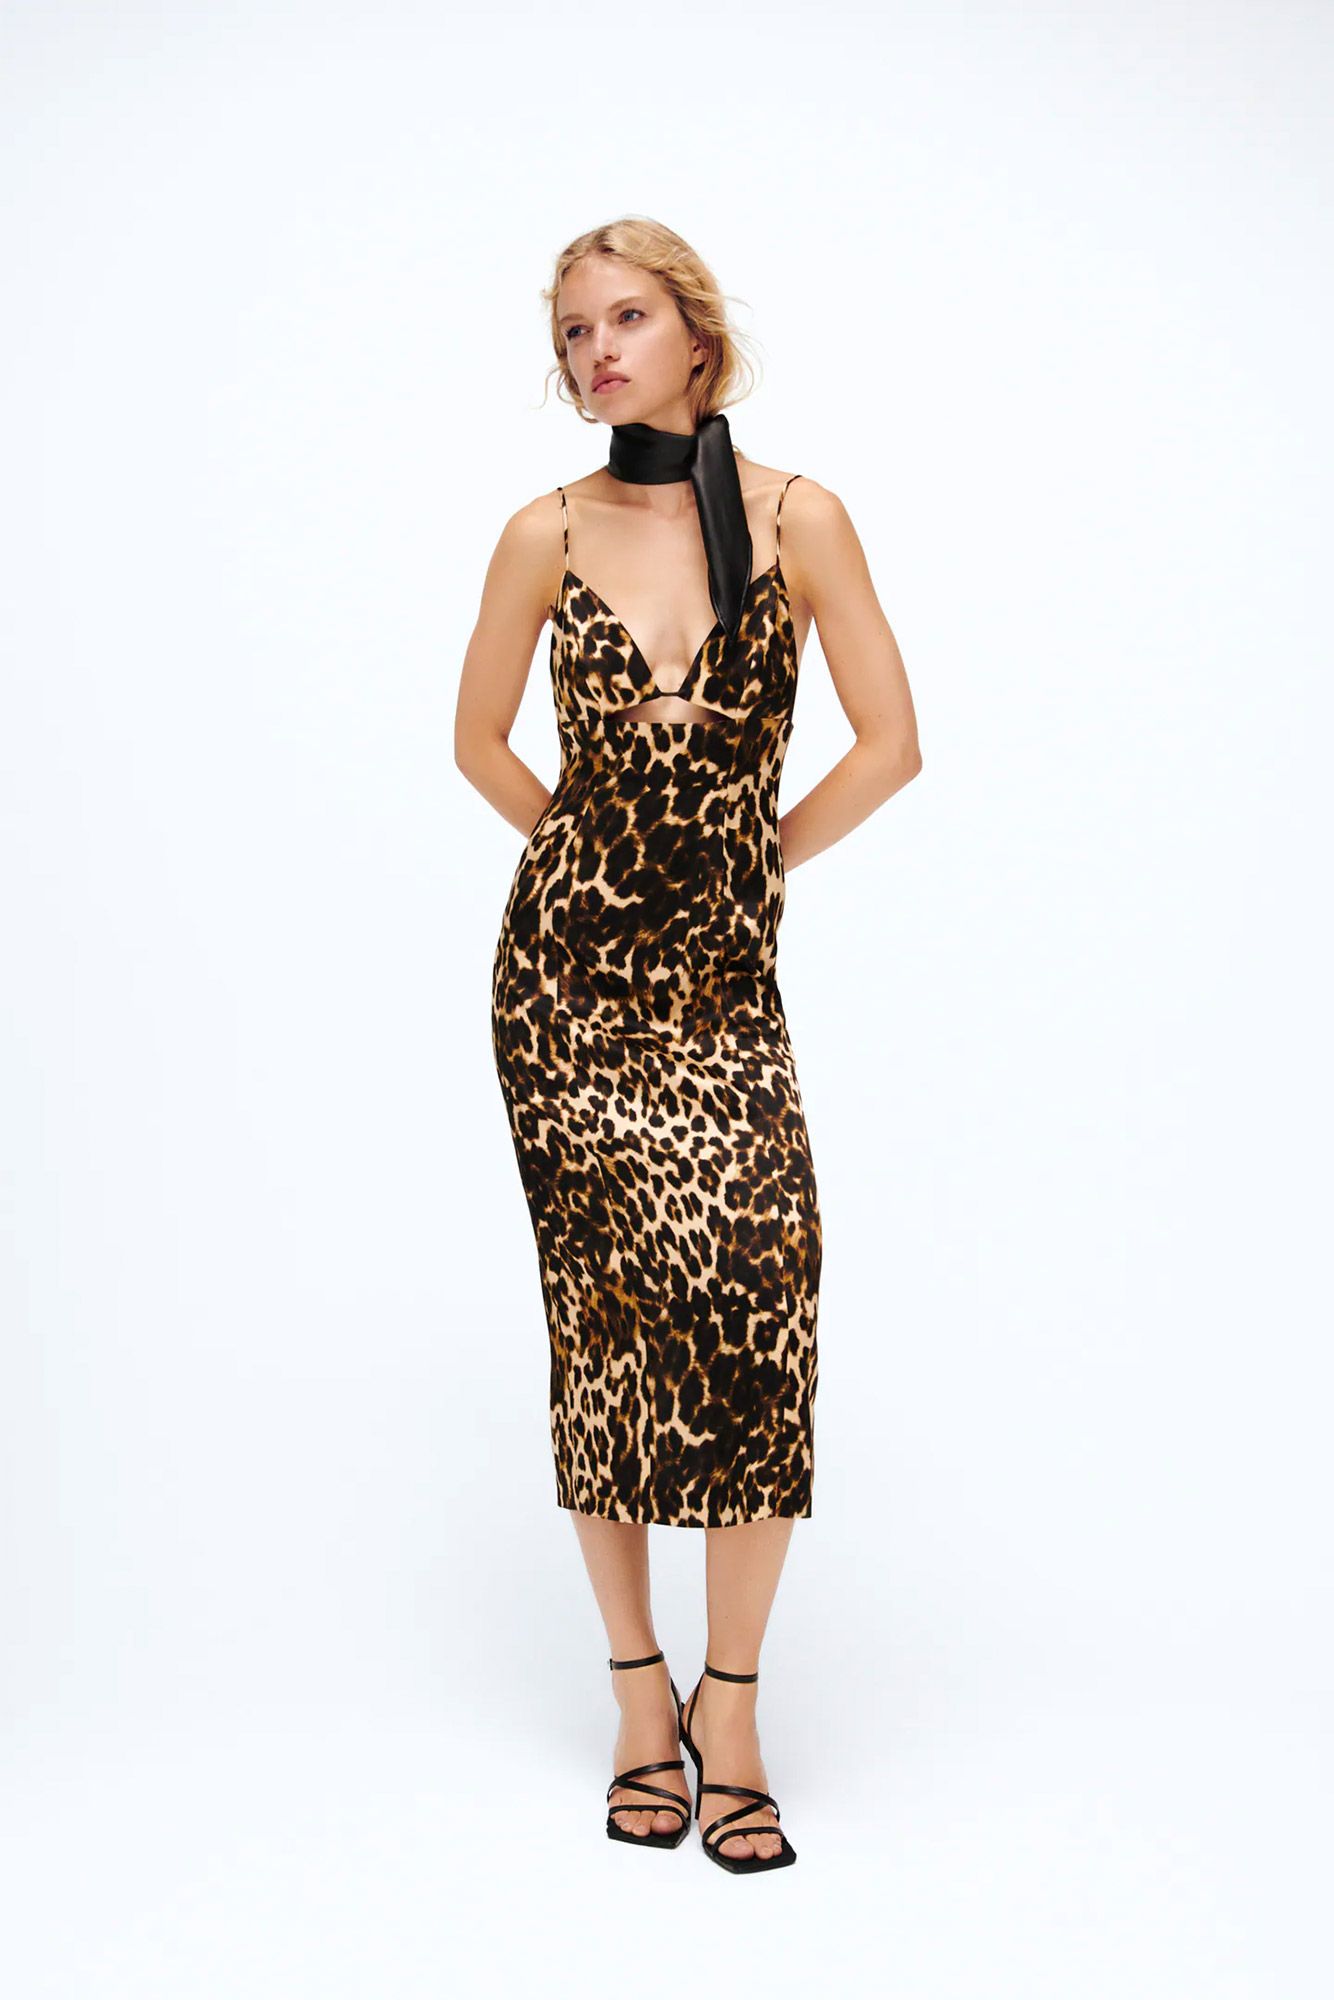 el 'staff' Zara ha reservado este vestido de leopardo